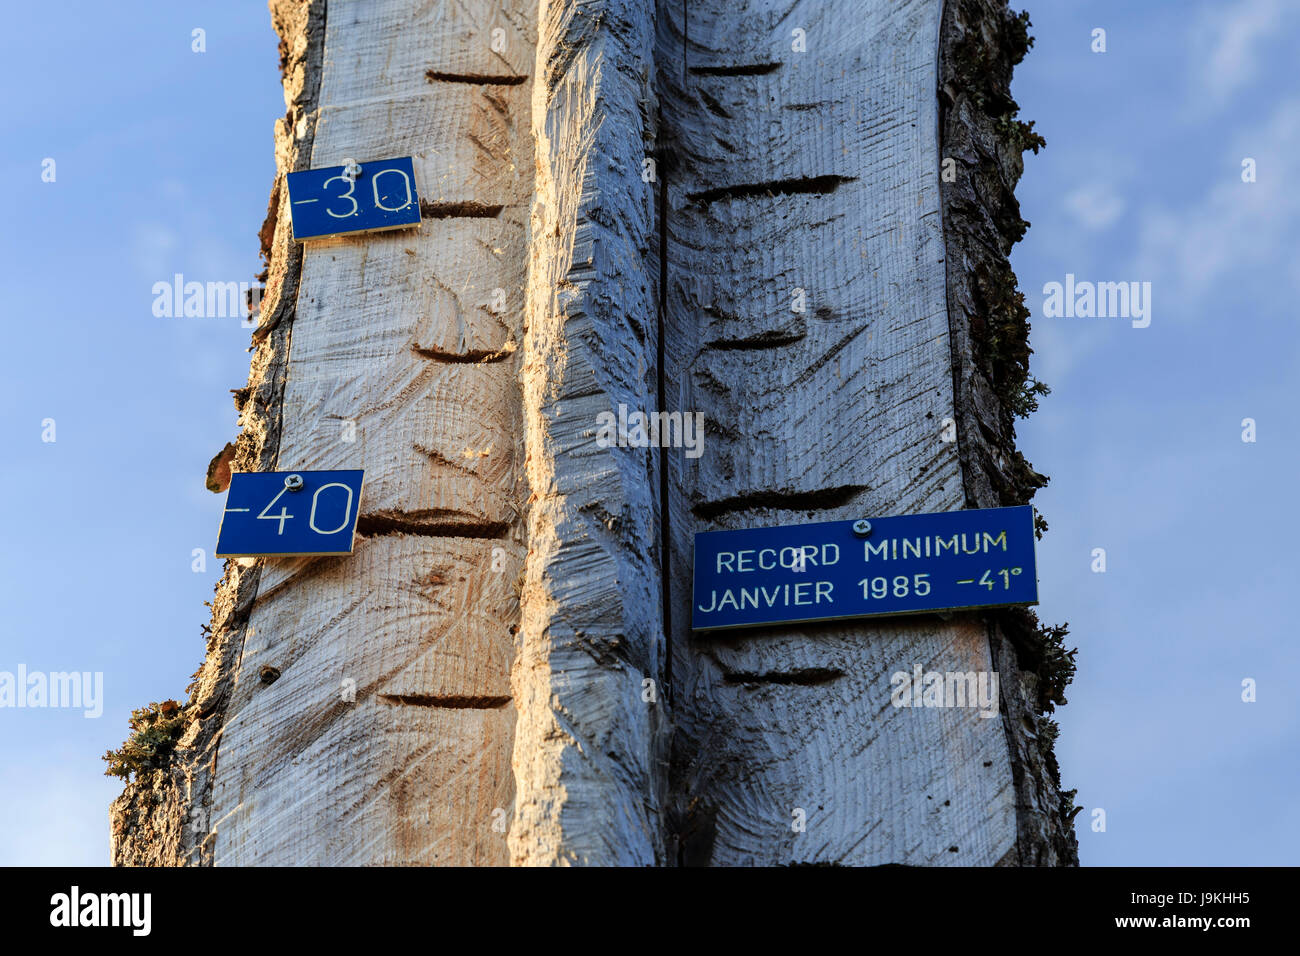 France, Doubs, parc naturel régional du Haut-Jura (montagnes du Jura Parc Naturel Régional), Mouthe, thermomètre en bois géant montrant froid record Banque D'Images